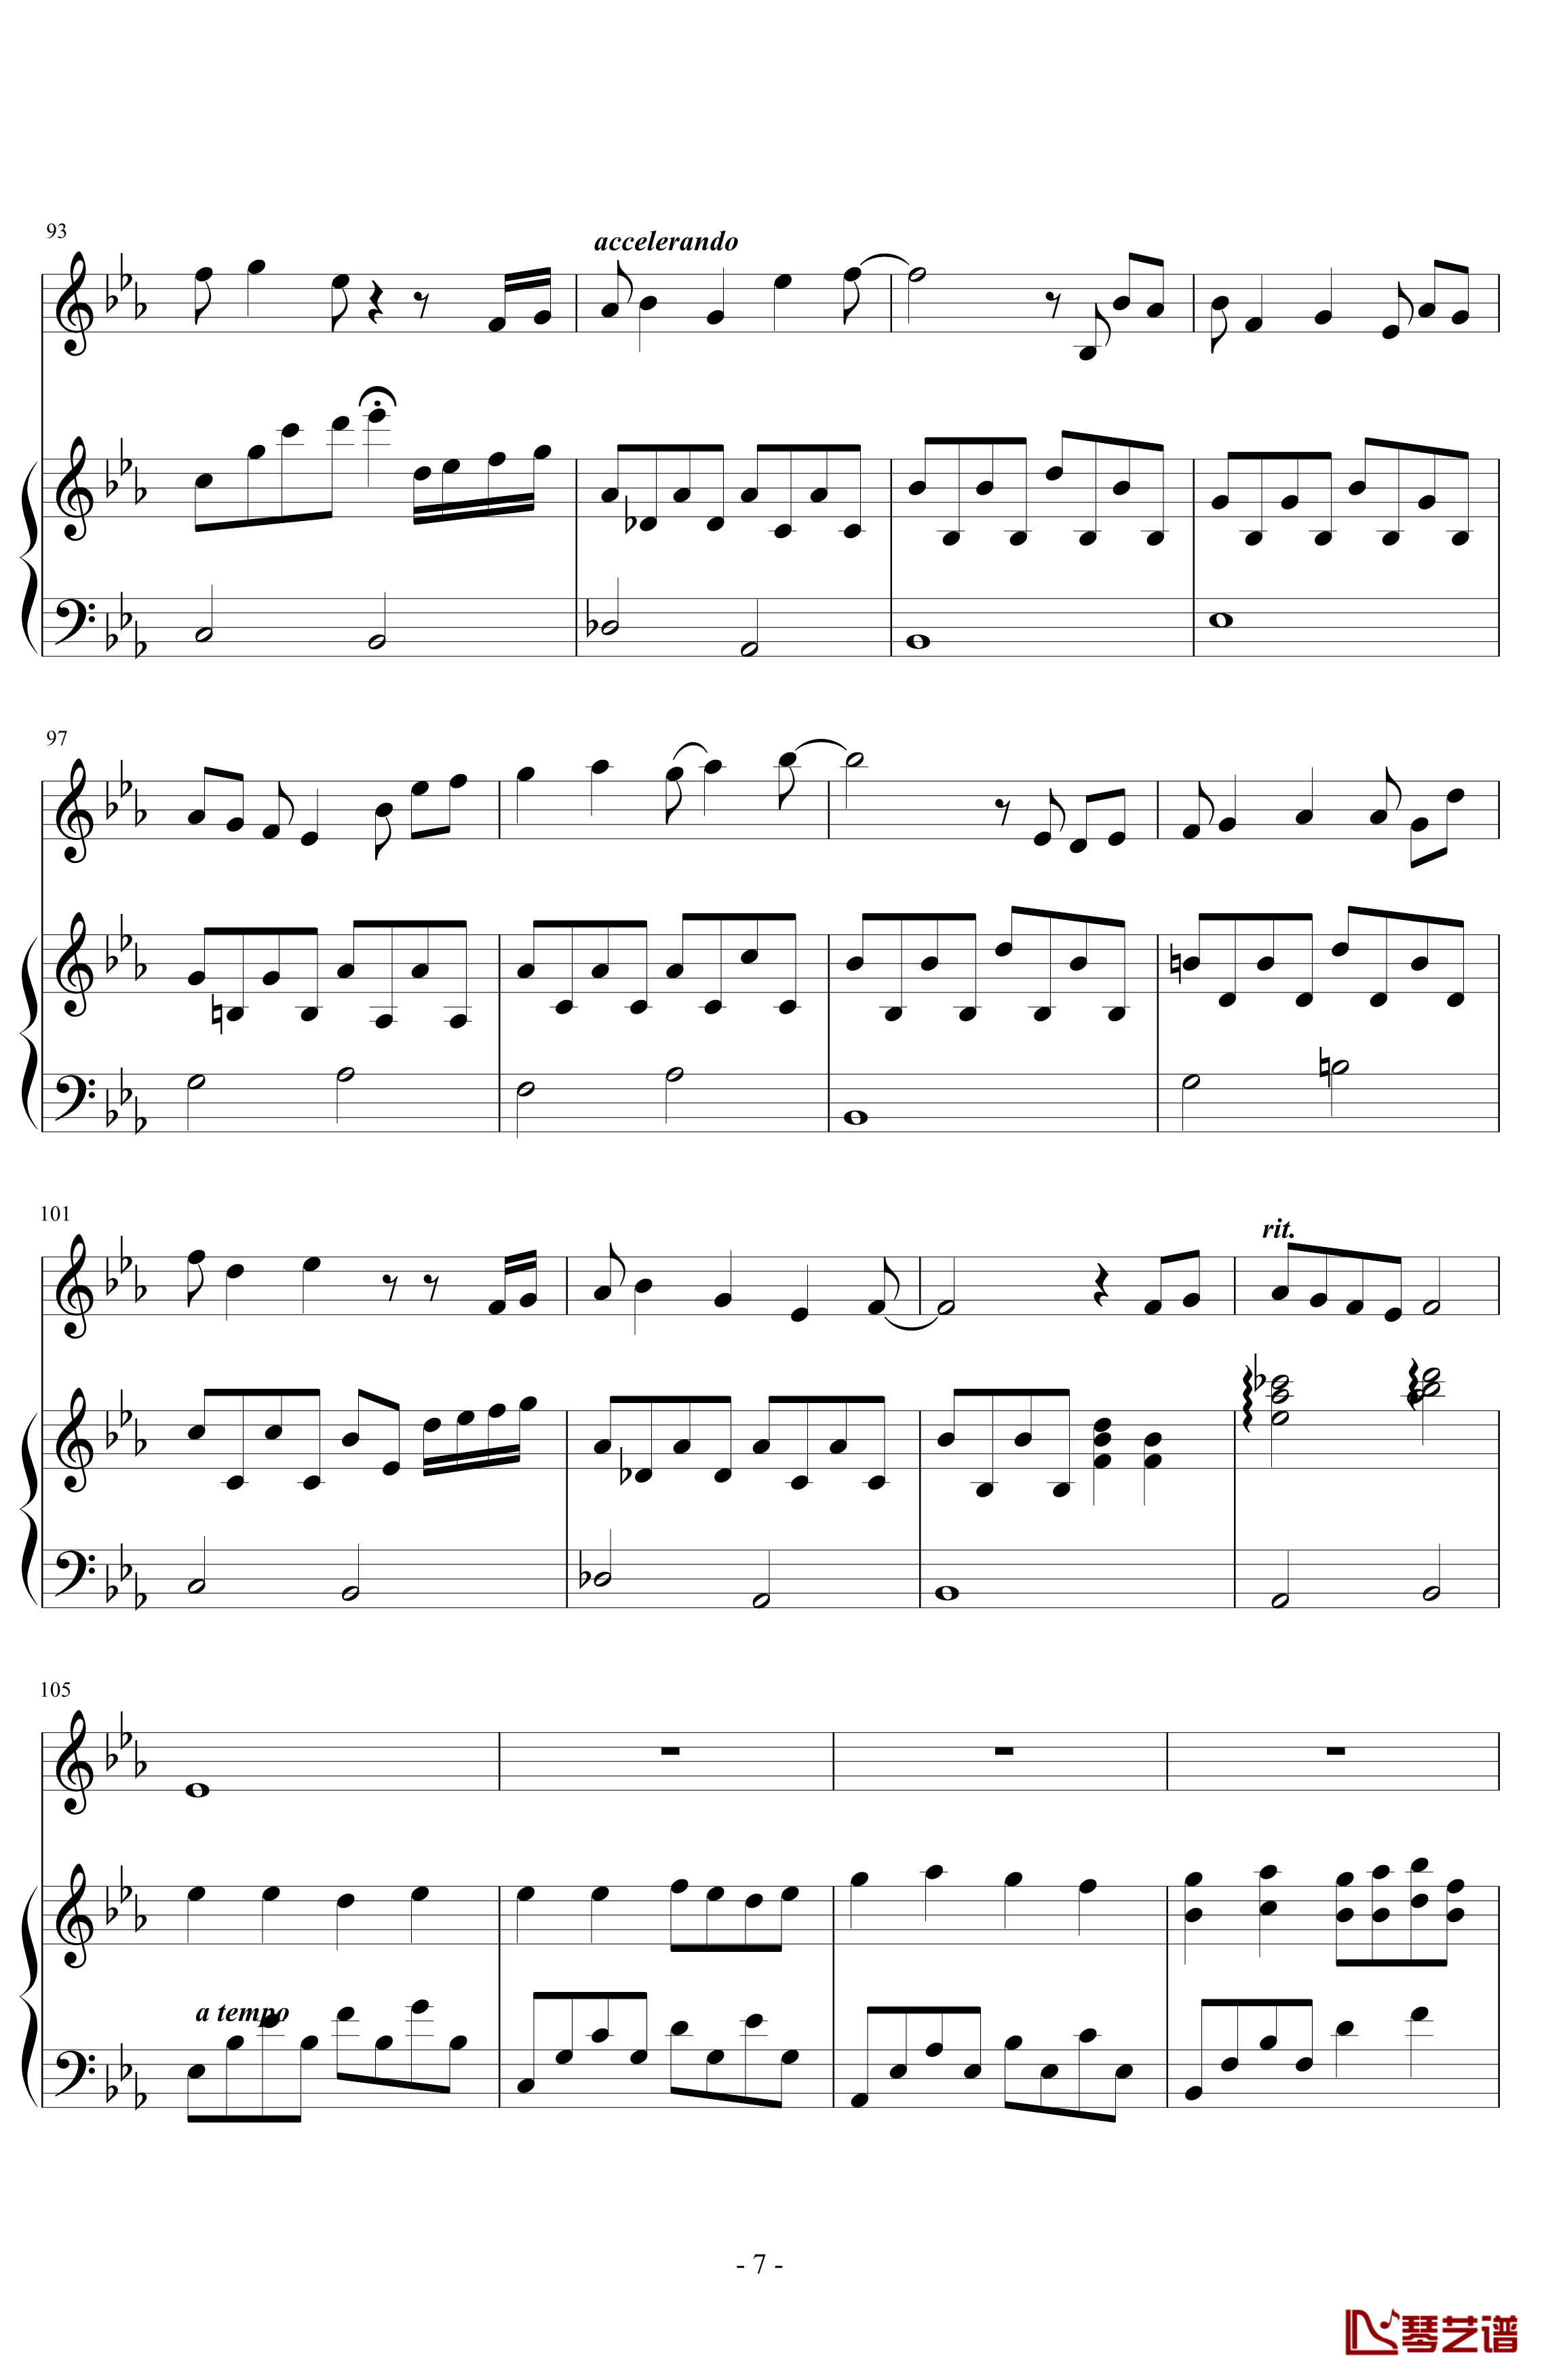 三年级二班钢琴谱-潇洒星空7